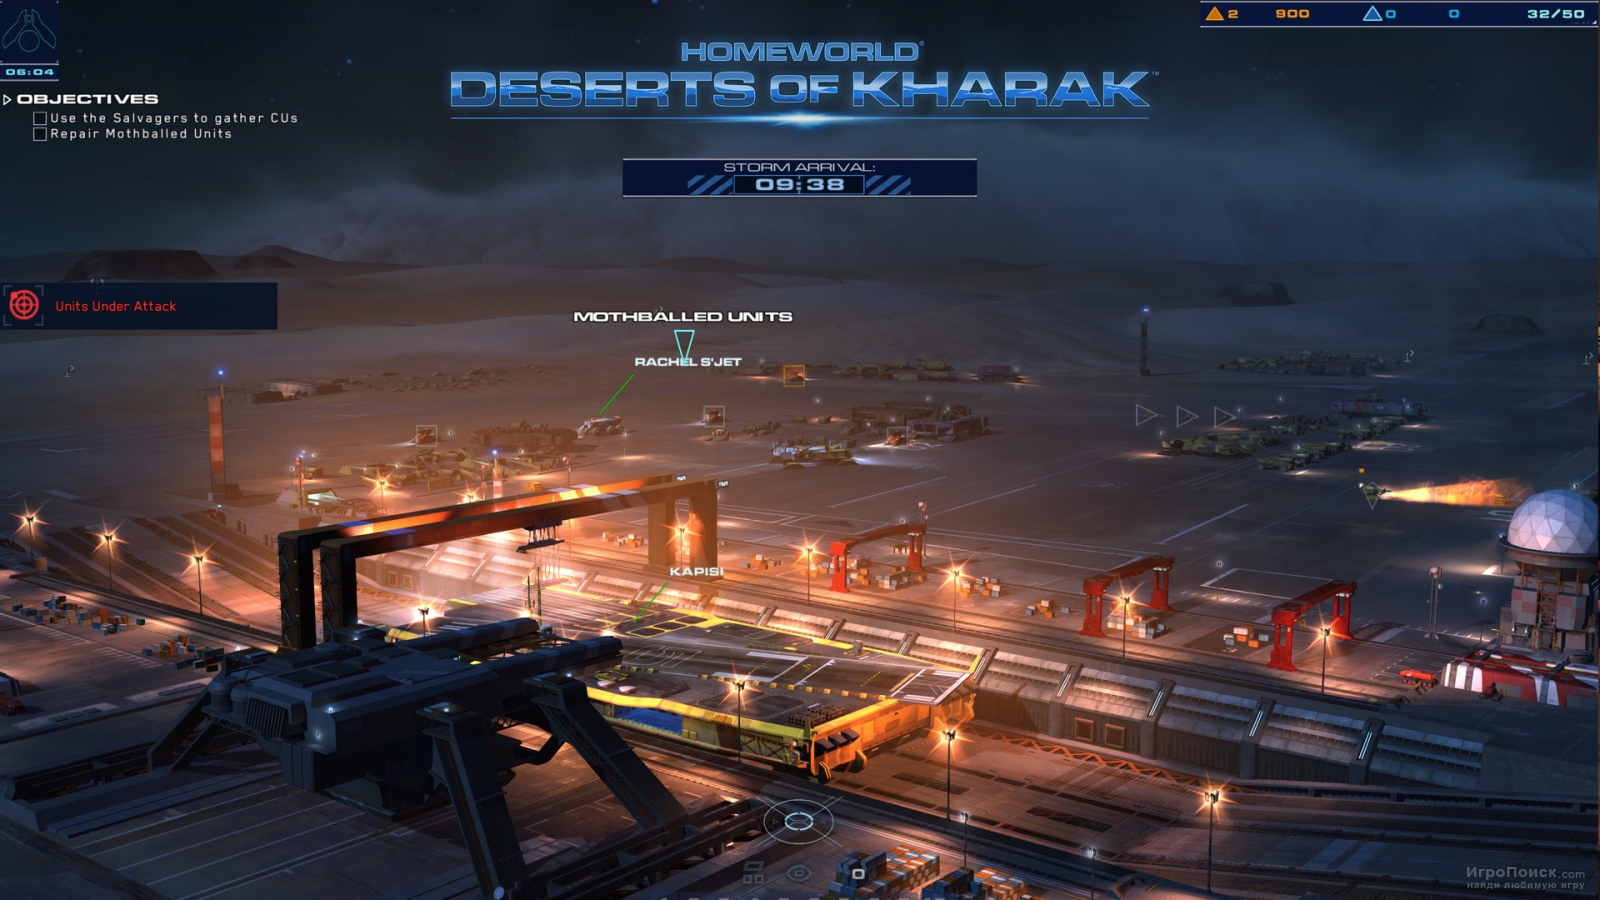    Homeworld: Deserts of Kharak